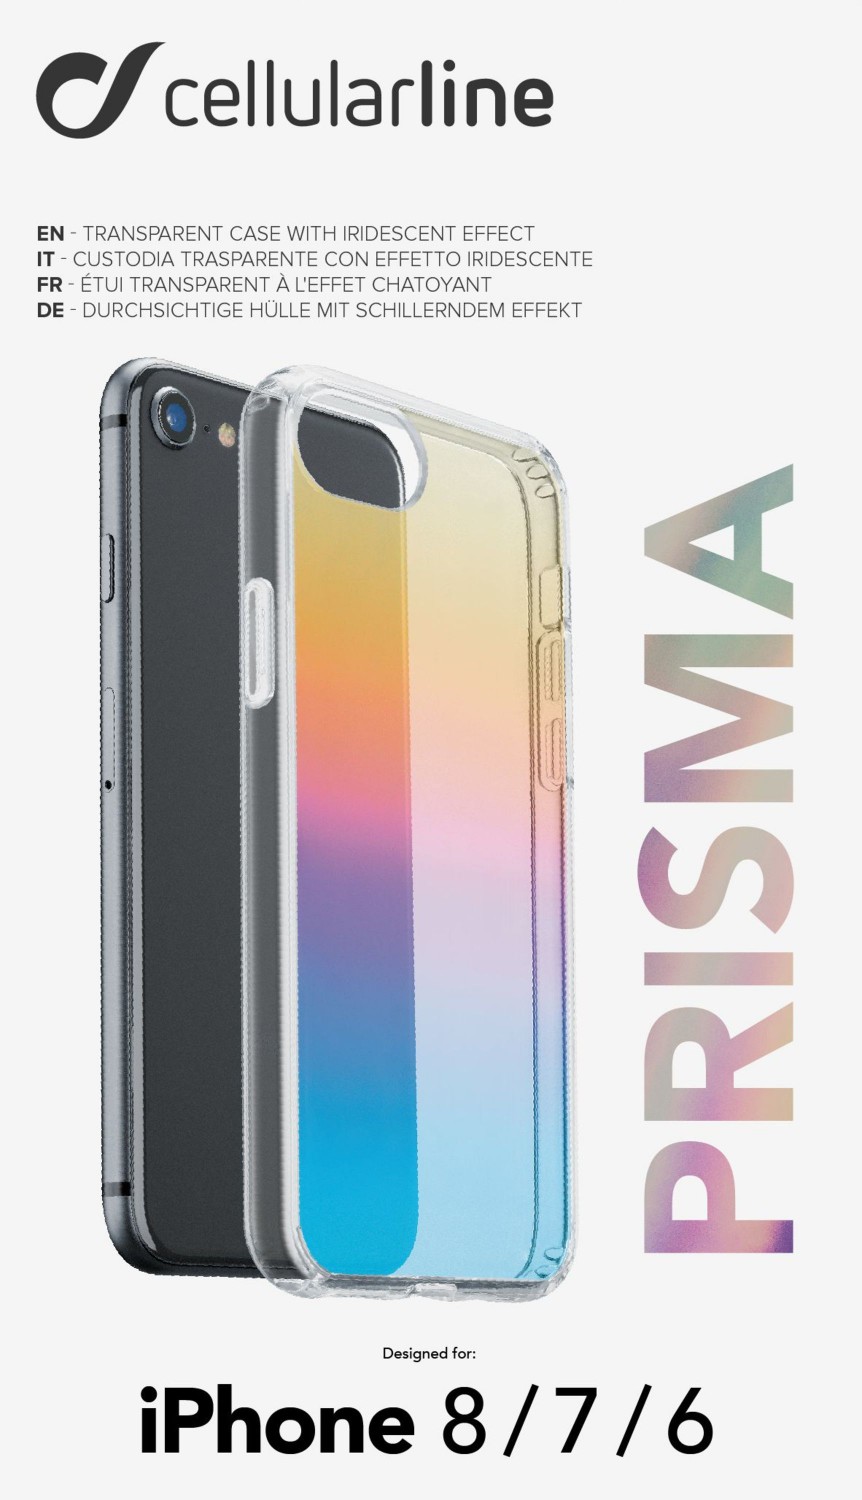 Cellularline Prisma duhový kryt, pouzdro, obal Apple iPhone SE 2020/8/7/6, polotransparentní